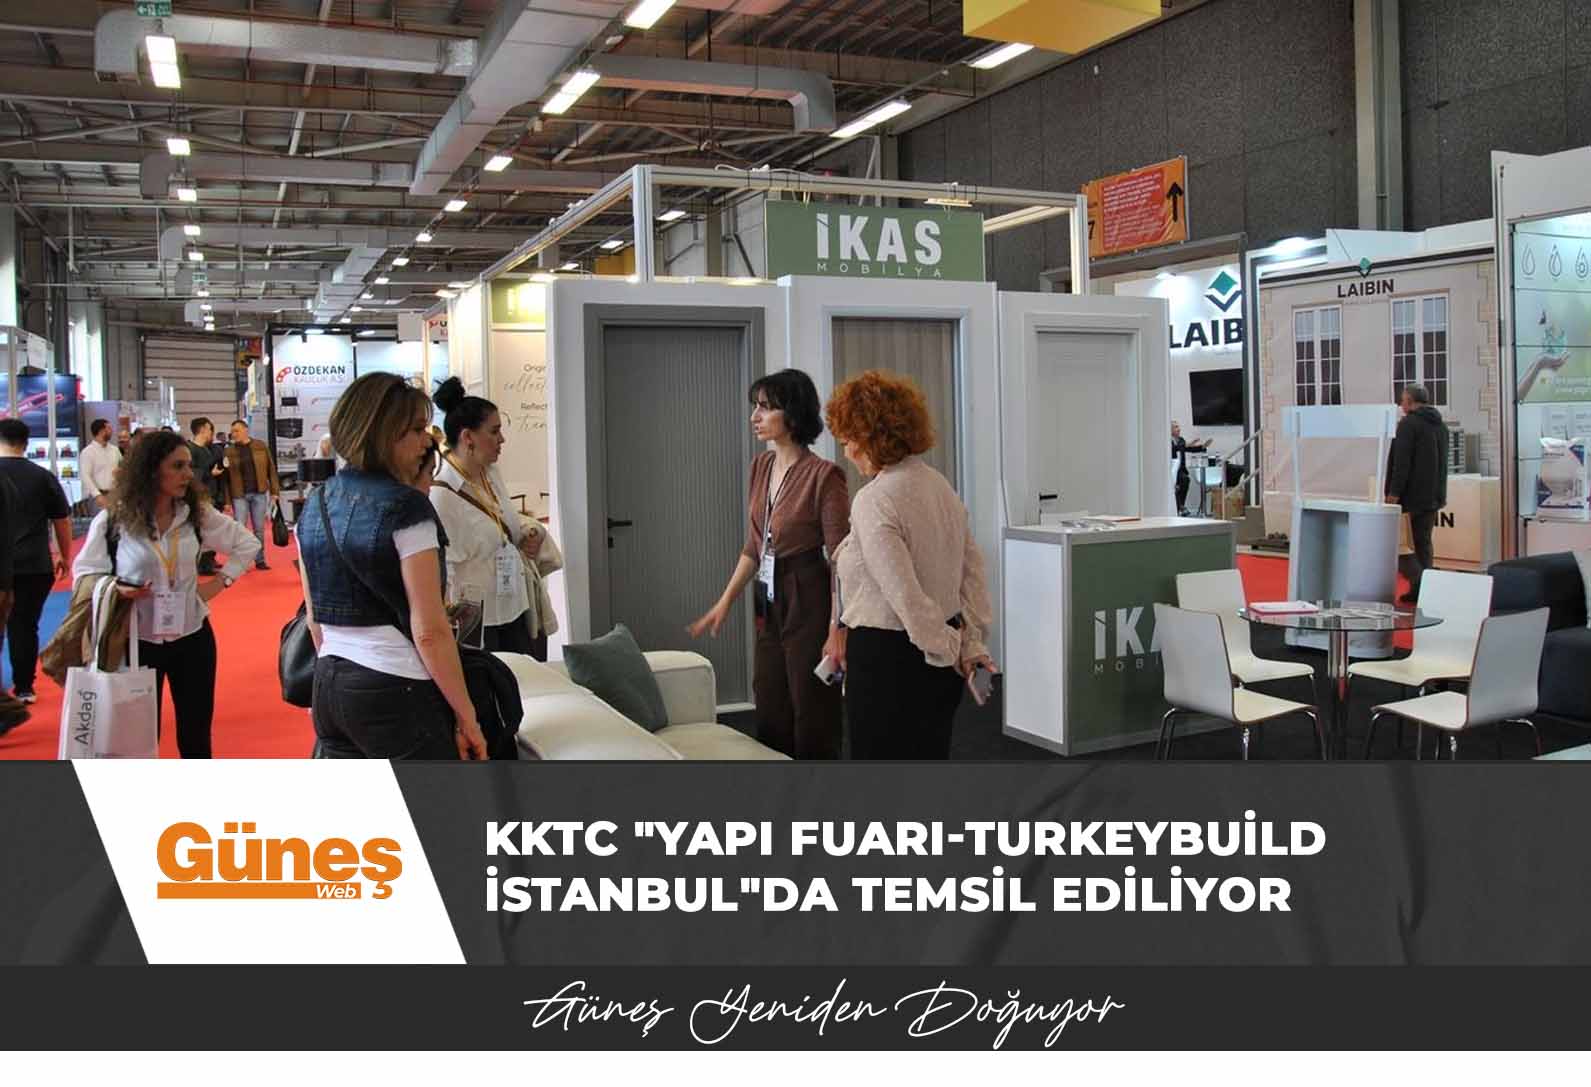 KKTC “Yapı Fuarı-Turkeybuild İstanbul”da temsil ediliyor